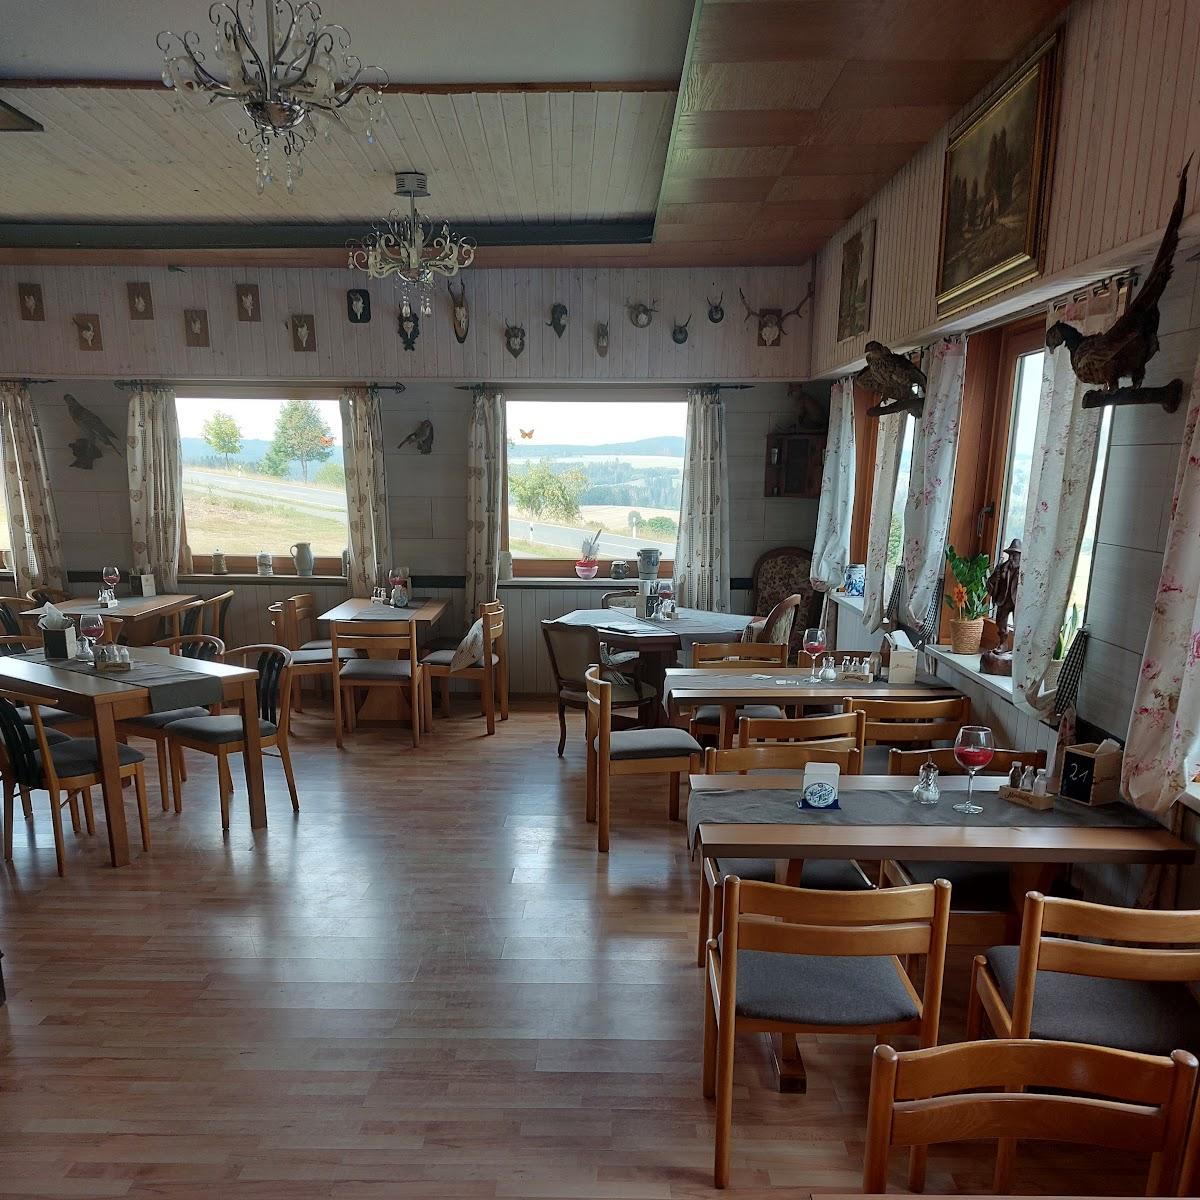 Restaurant "Landgasthof Schöne Aussicht" in Bad Steben